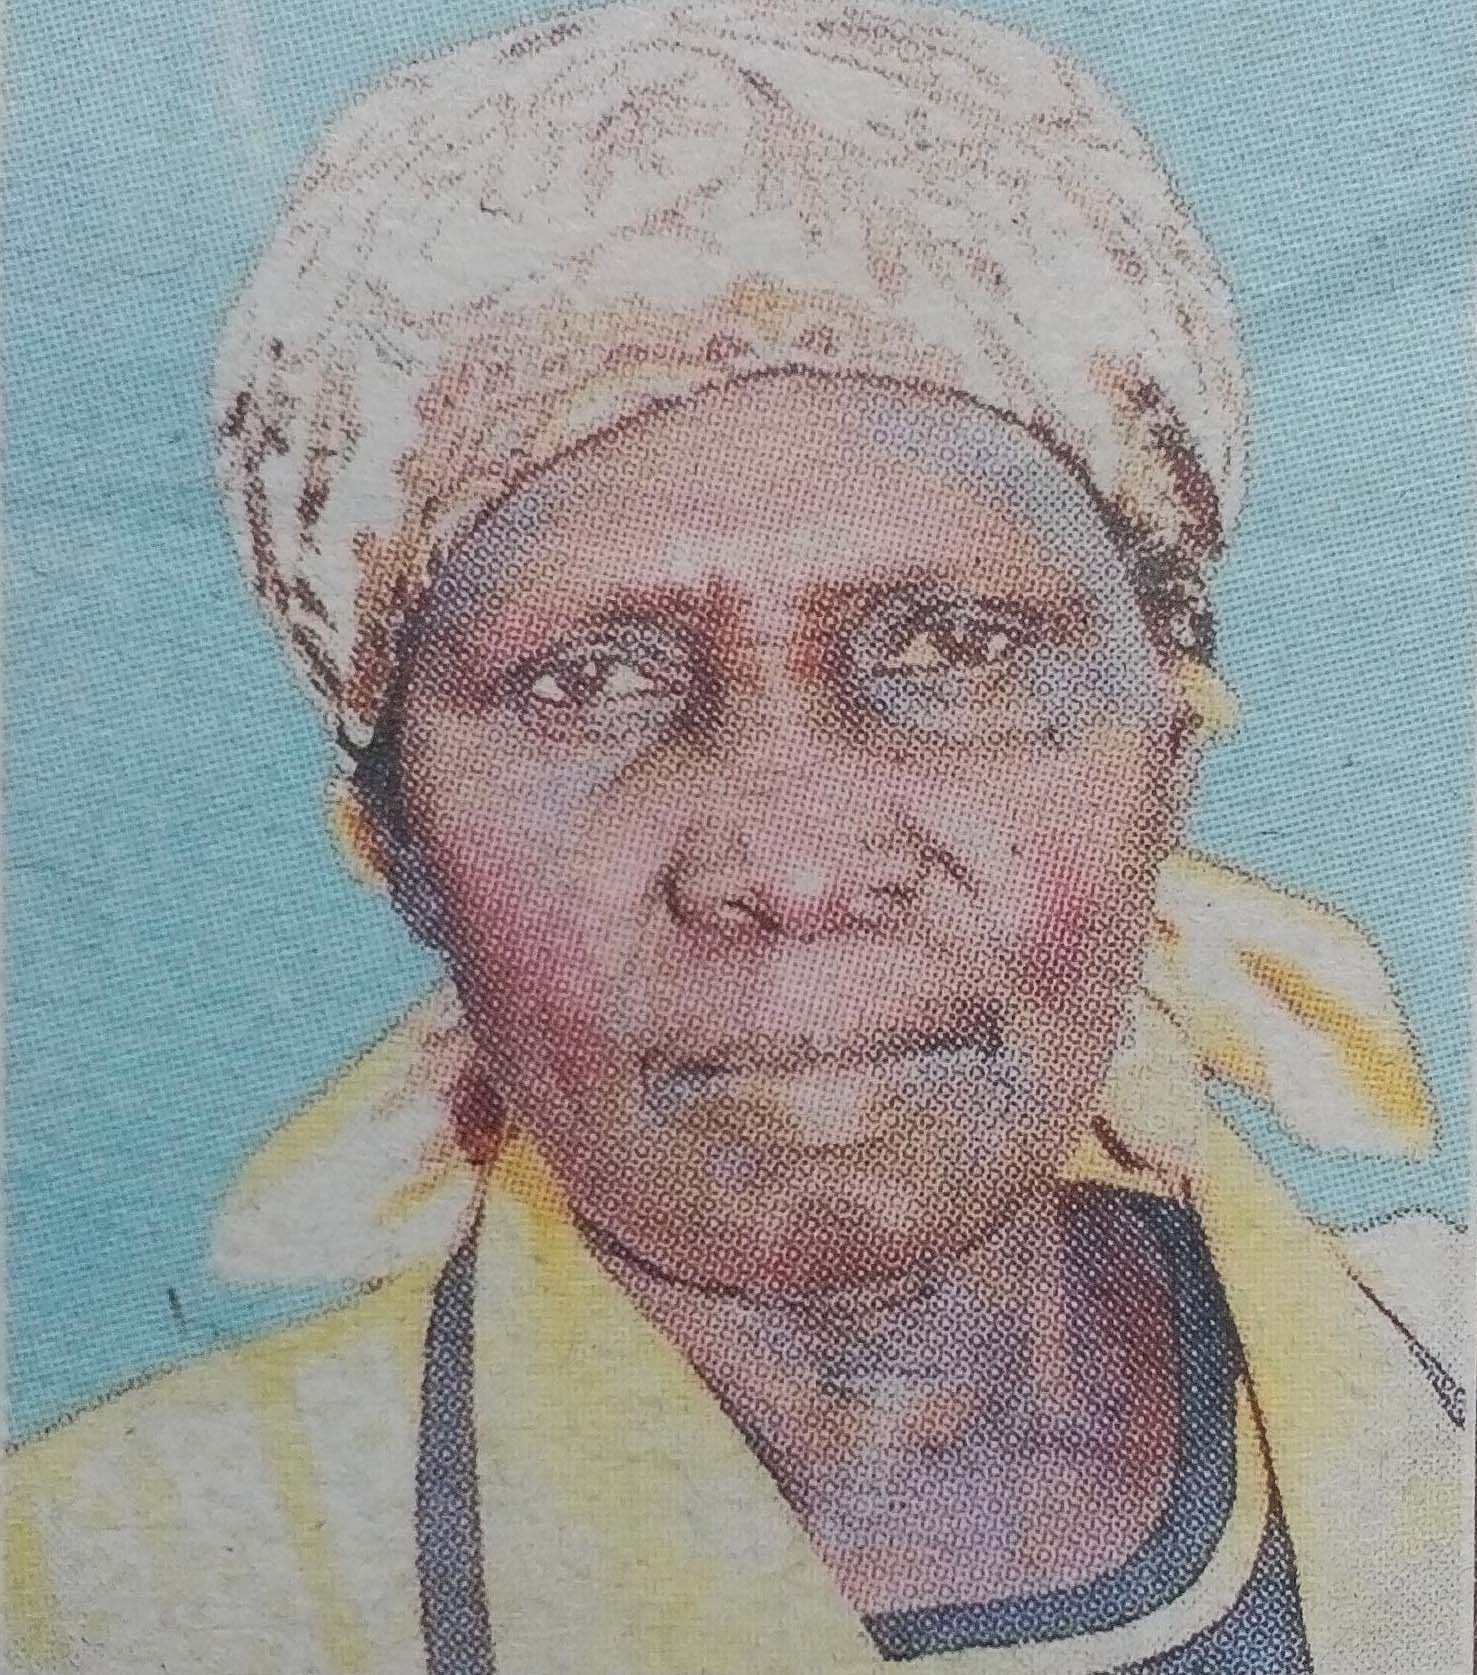 Obituary Image of Mama Joyce Anyango Ageing